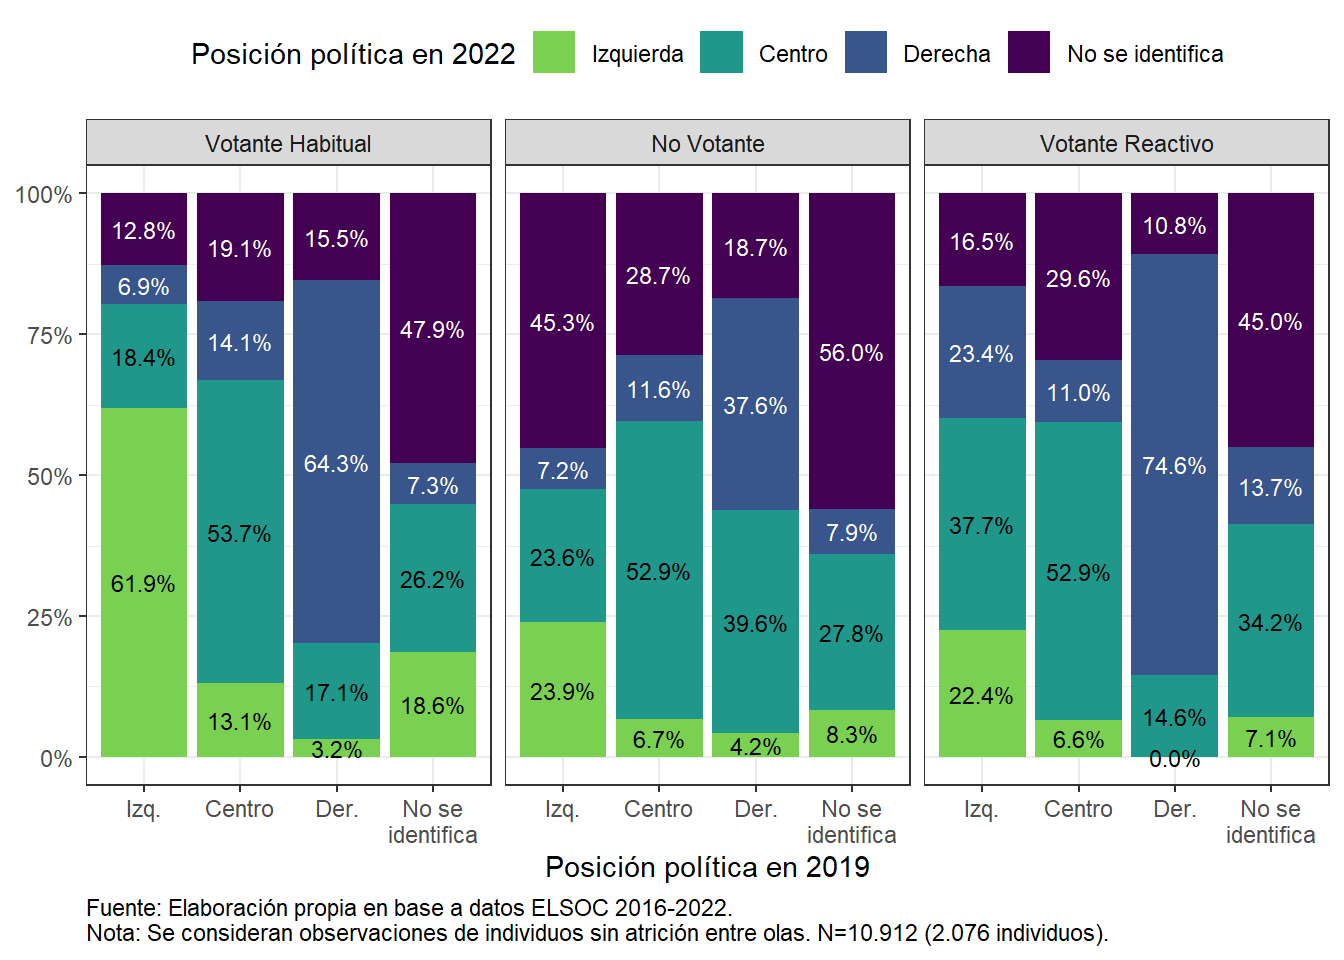 Estabilidad y cambios en posición política entre 2019 y 2022, según perfil de votante